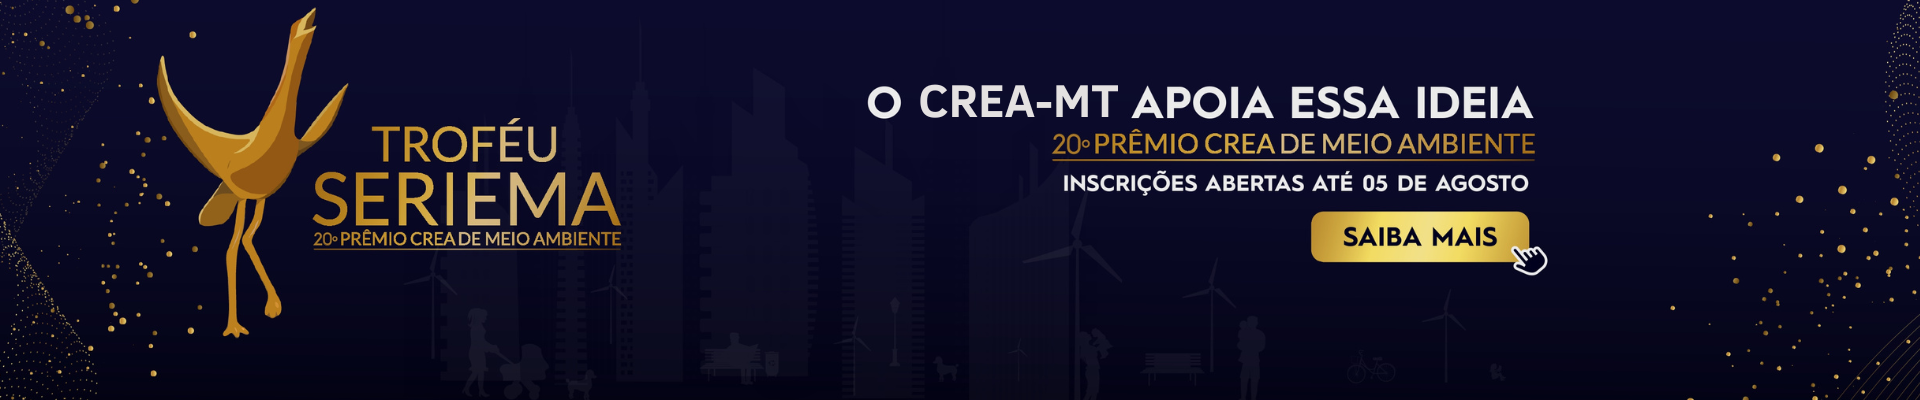 Crea-MT apoia: Estão abertas as inscrições para a 20ª edição do TROFÉU SERIEMA – Prêmio Crea de Meio Ambiente